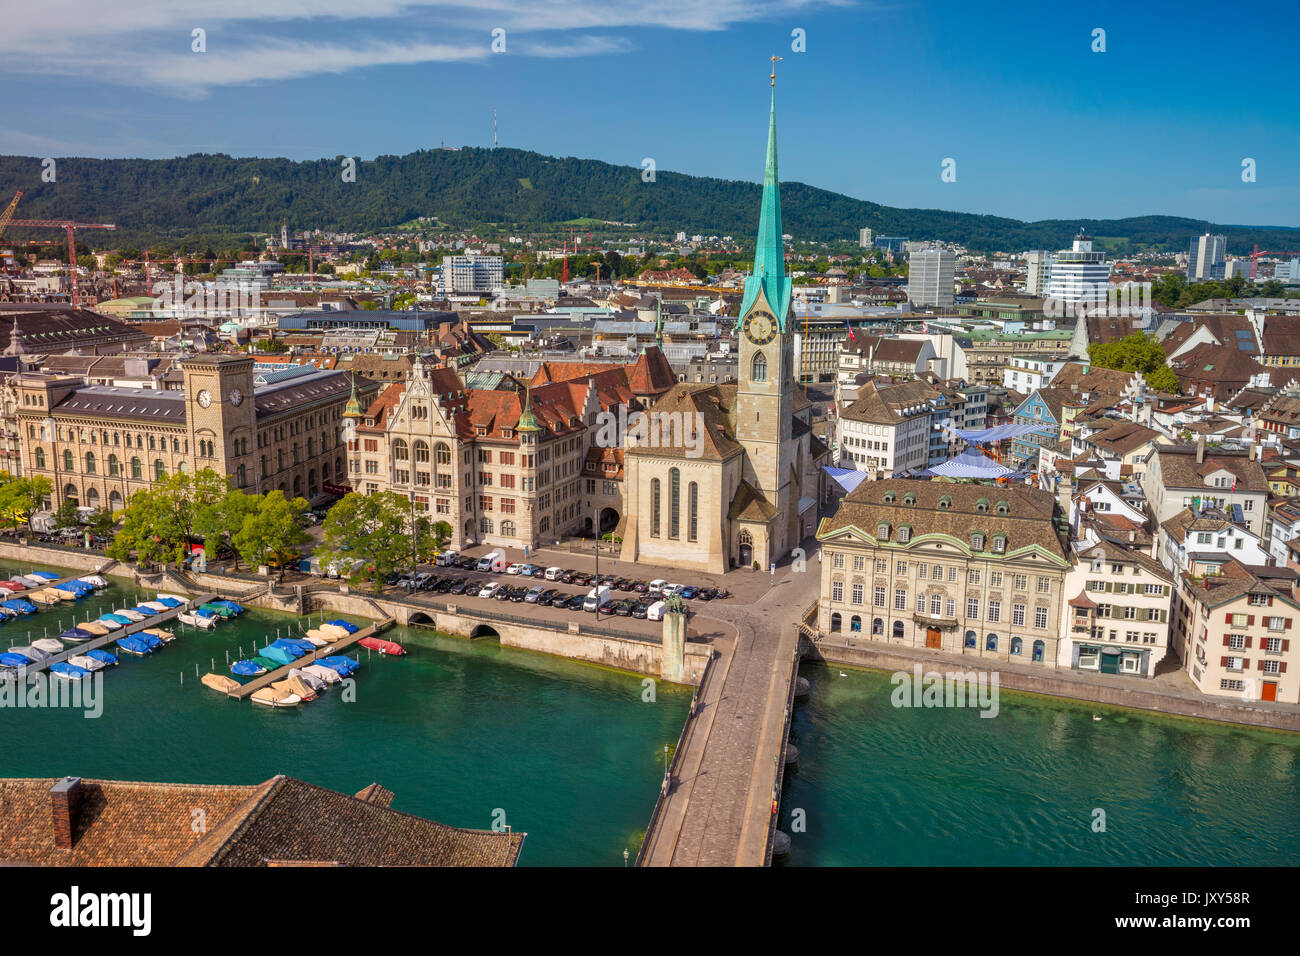 Zurich Switzerland August 13 2019 View Stock Photo 1482364094